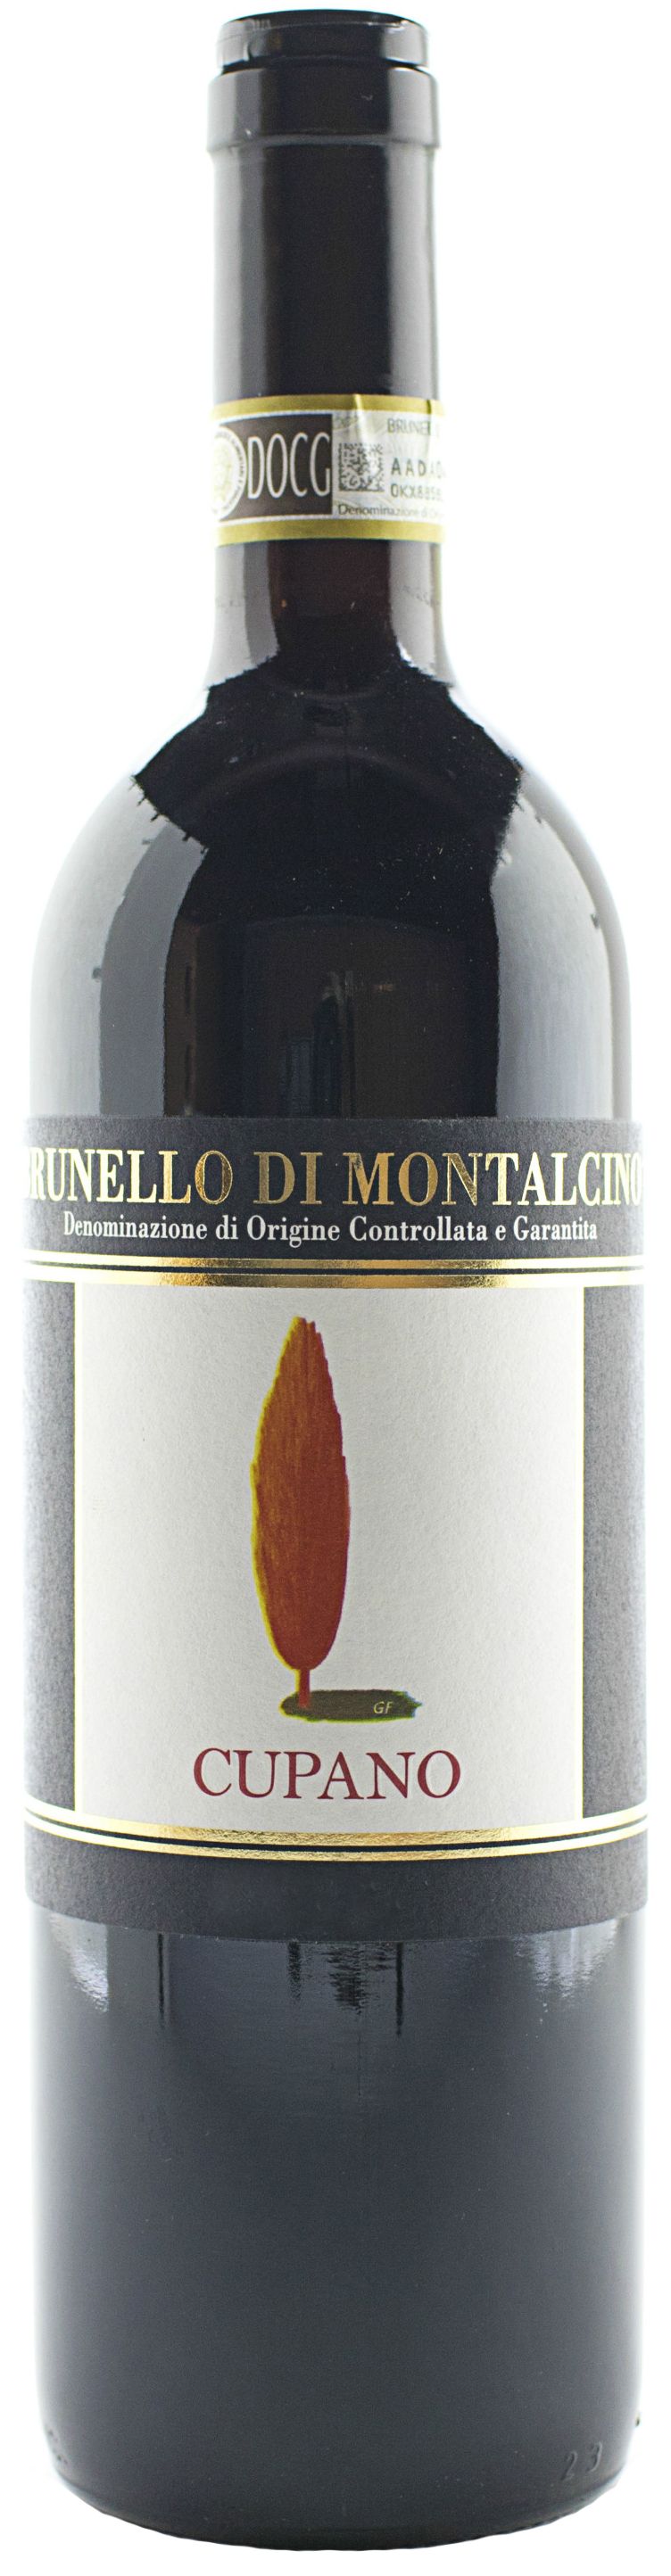 Cupano, Brunello Di Montalcino, 2000